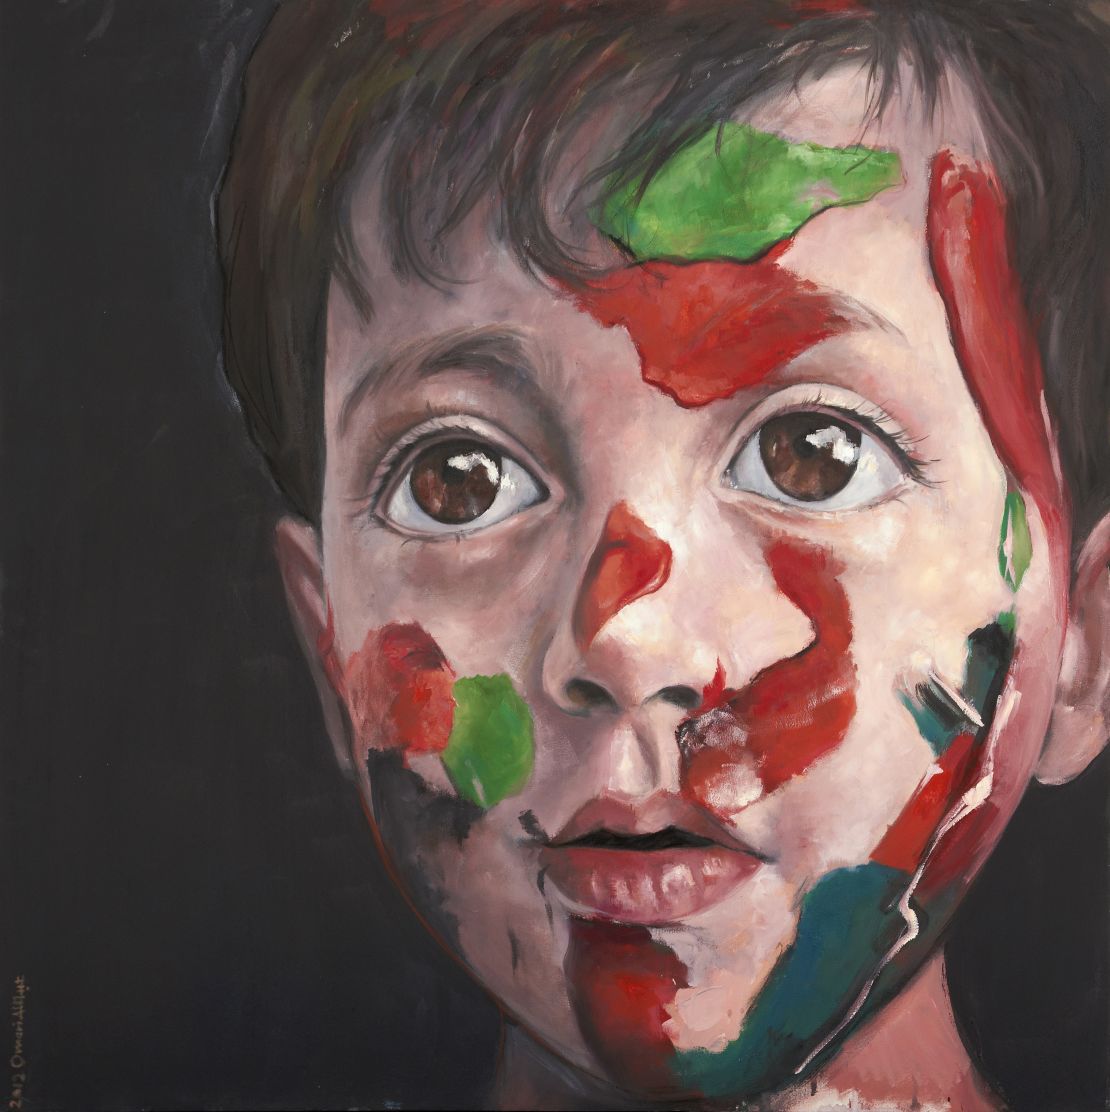 "Syrian Child" by Abdalla Omari of Syria